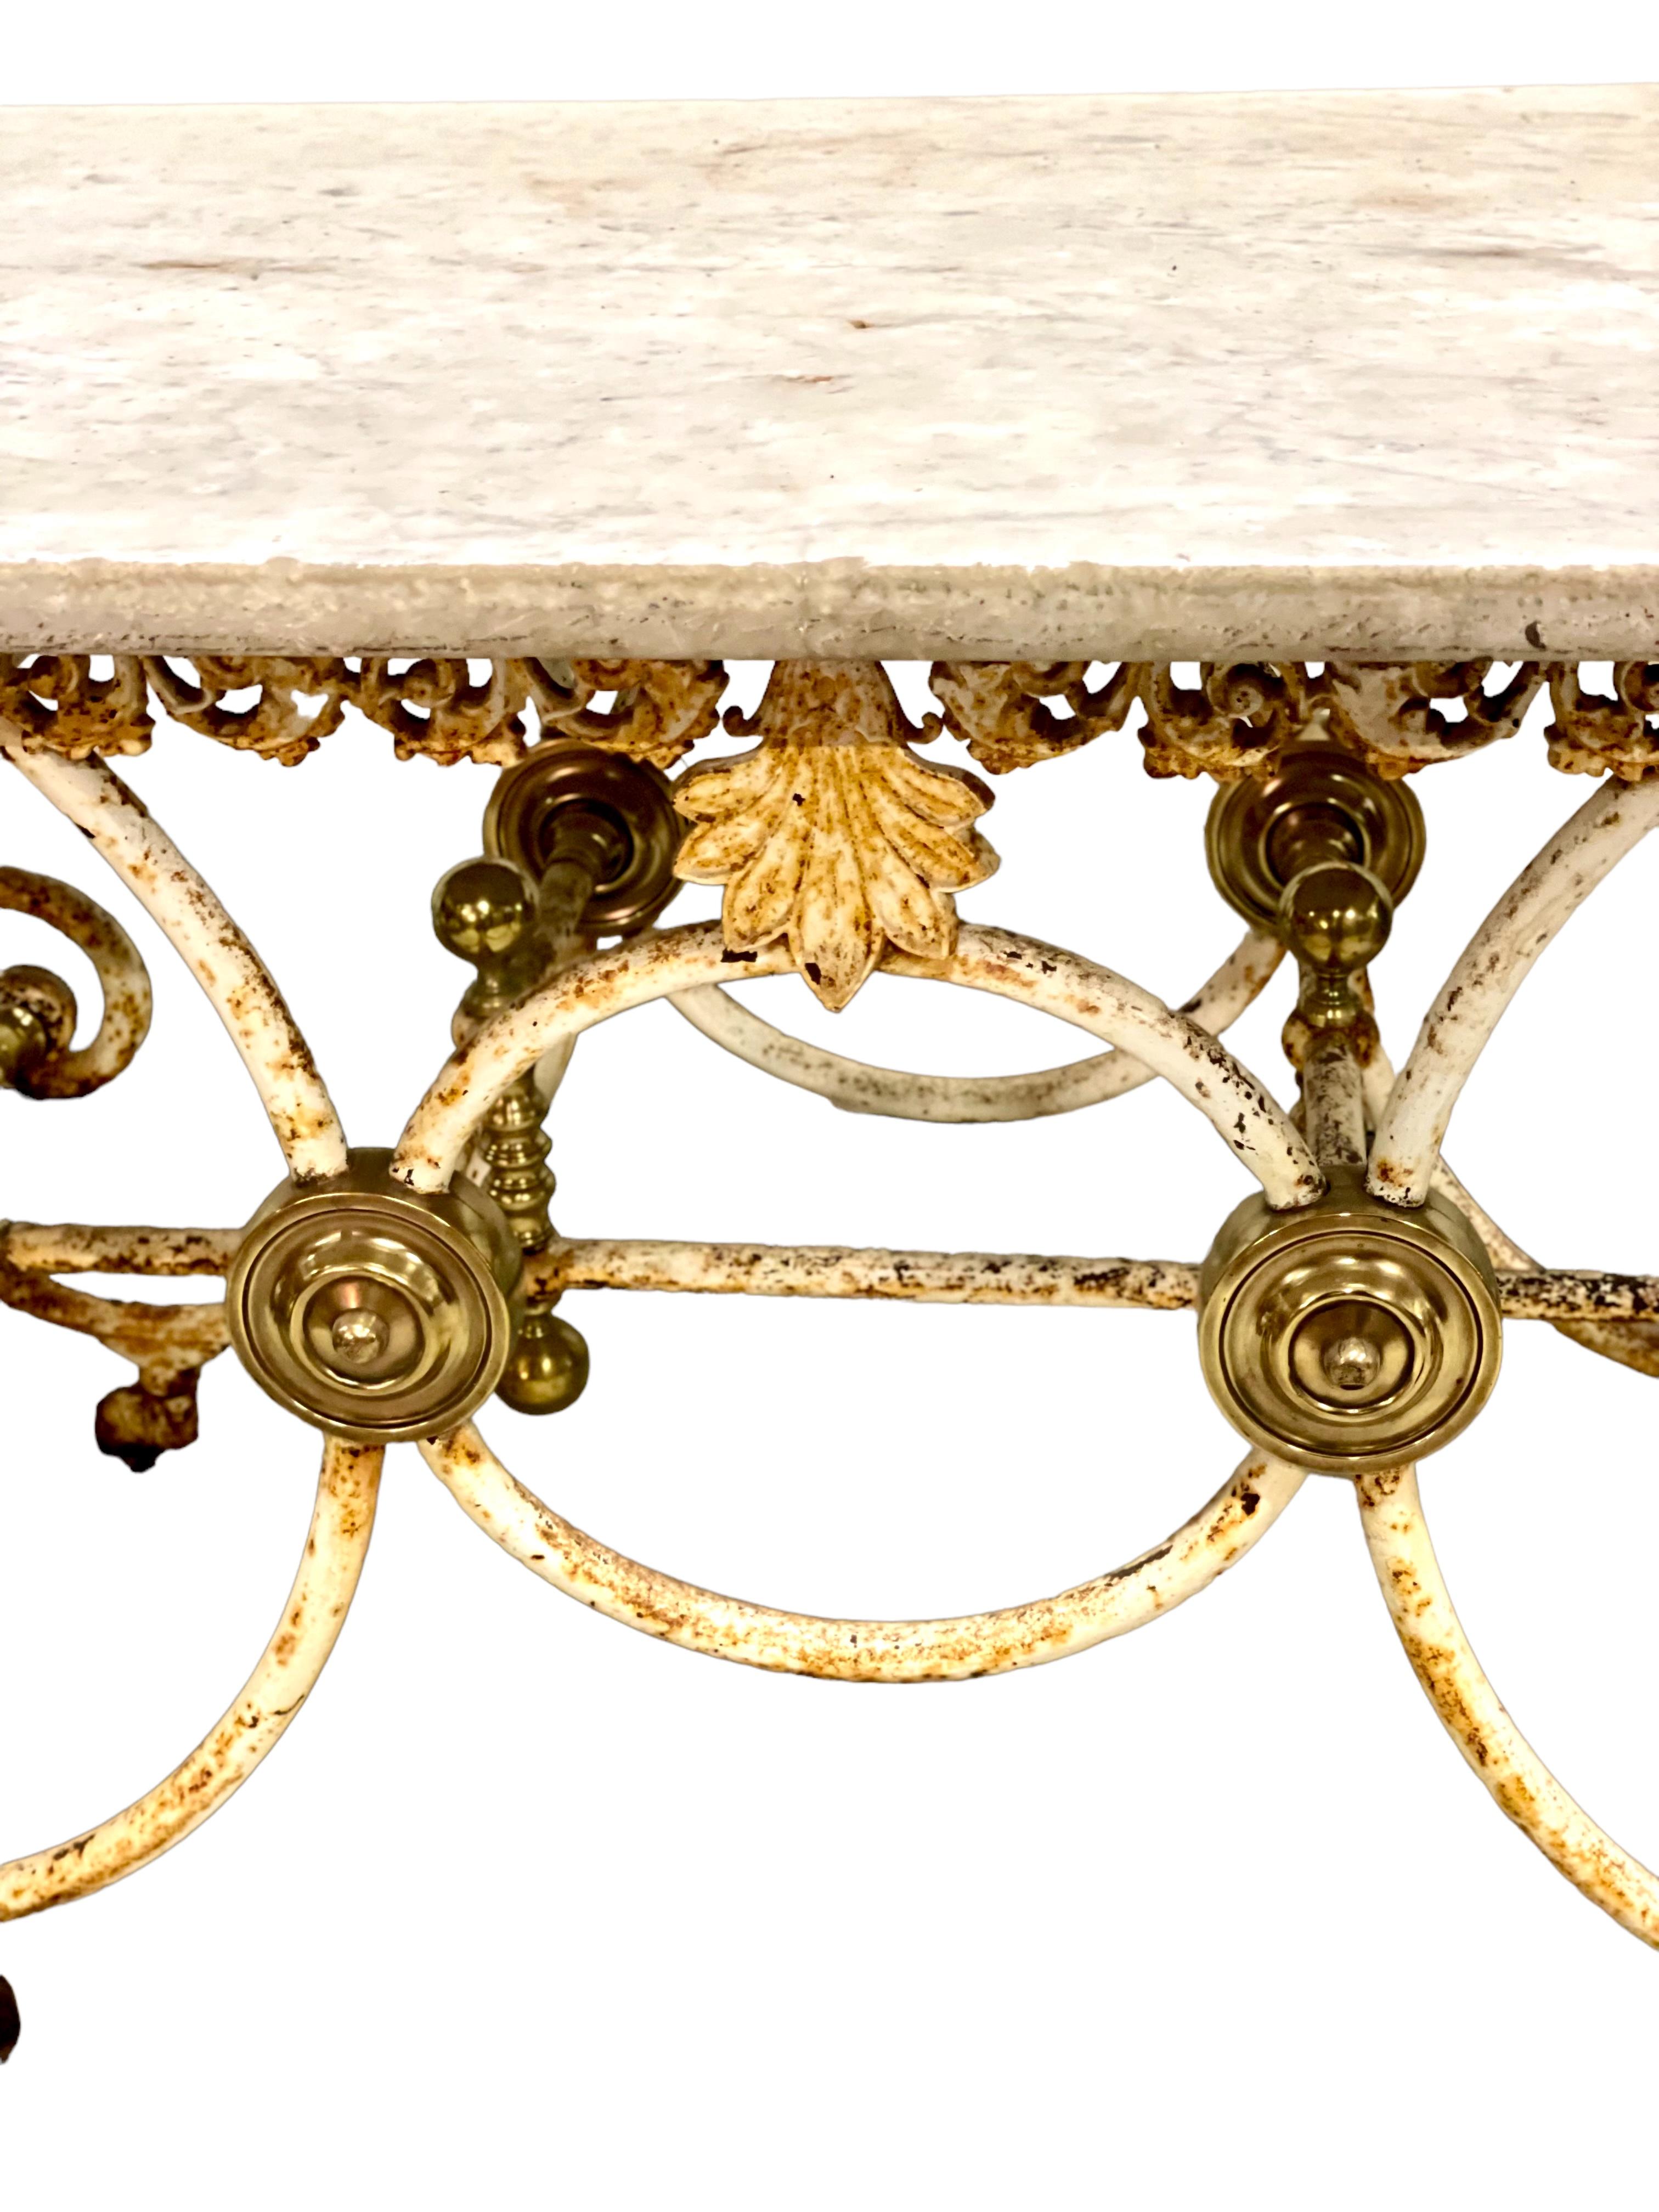 Cette exceptionnelle table à pâtisserie (ou à boucherie) du XIXe siècle, en fonte laquée et laiton doré, est dotée de grands pieds A.I.C. et de brancards en fer forgé reliant chaque extrémité. Le plateau est en marbre d'origine, avec quelques bosses